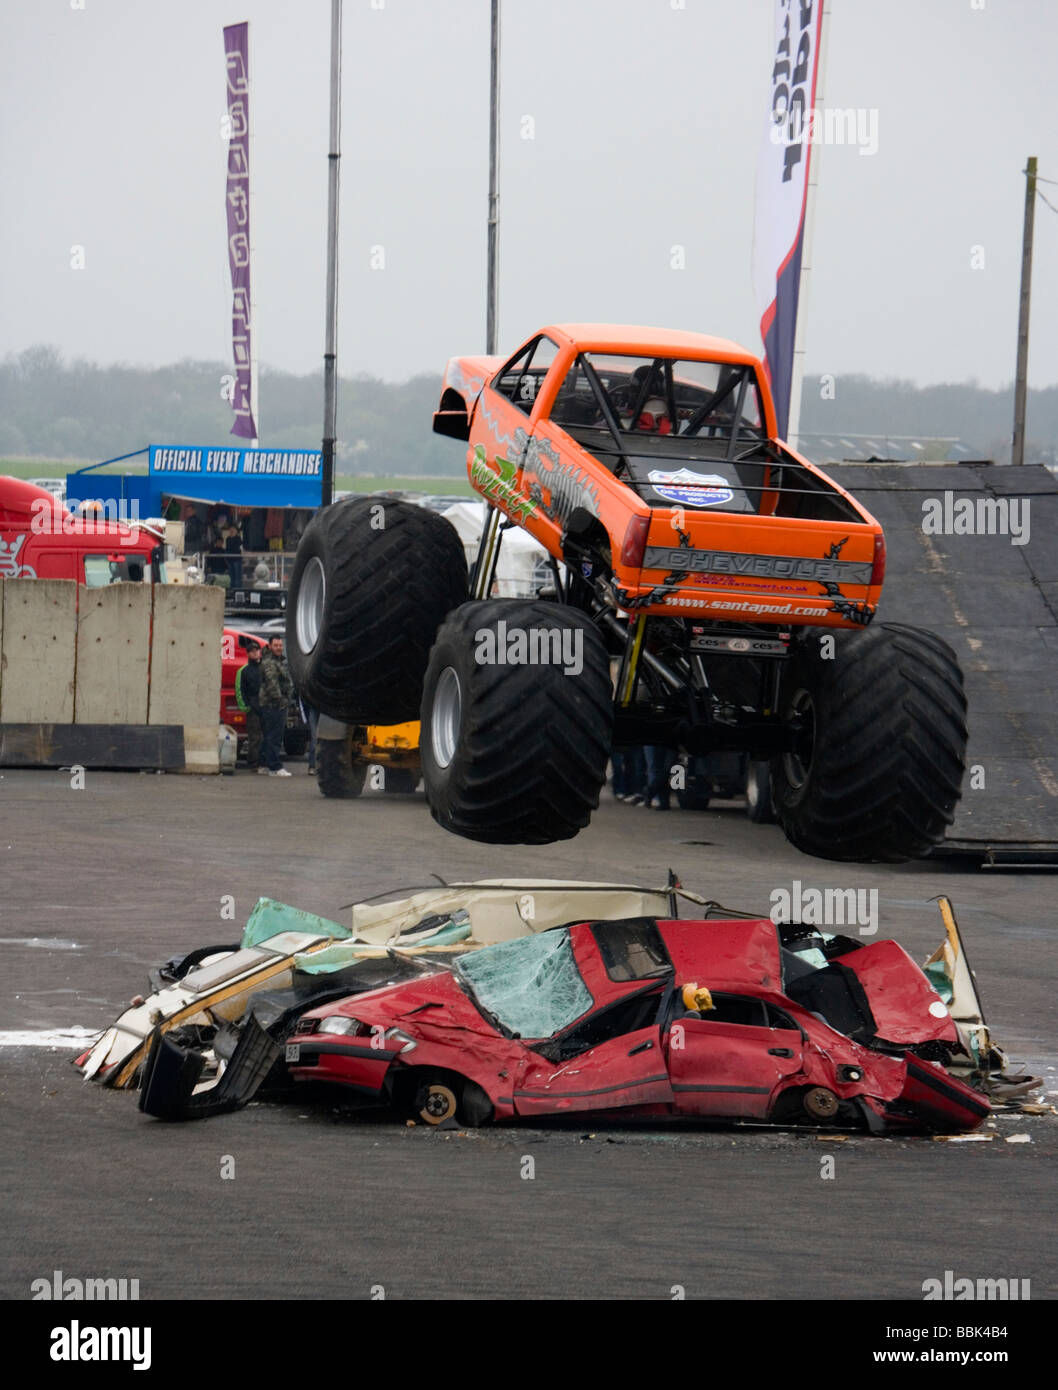 Monster Truck Podzilla saute au-dessus de voitures à l'événement de Pâques Opération Tonnerre à Santa Pod, Angleterre. Banque D'Images